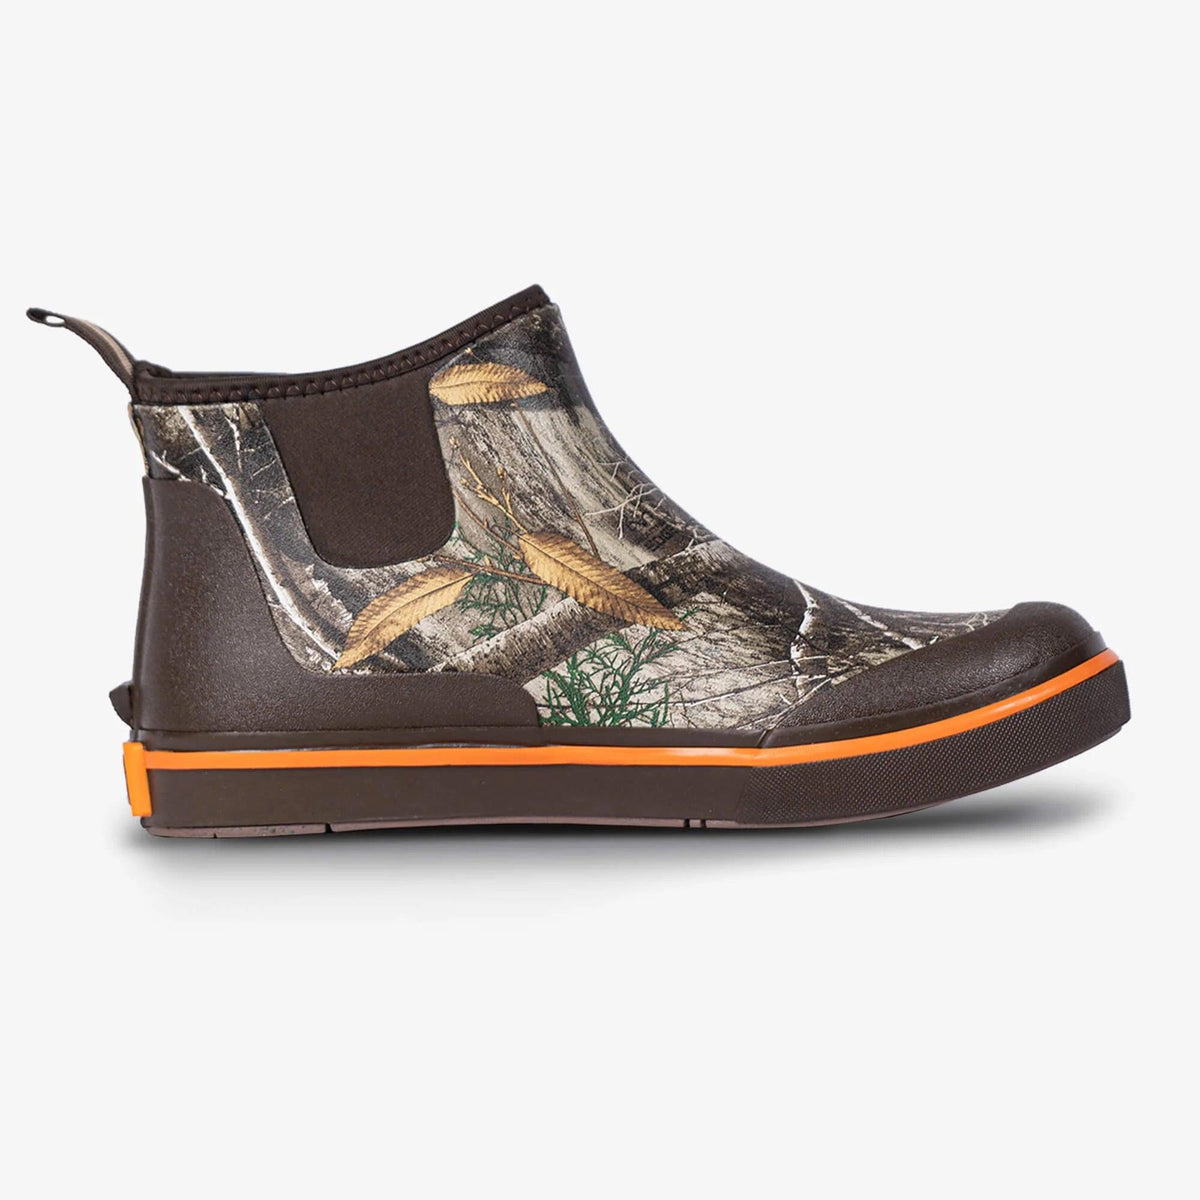 Gator Waders Camp Boots | Mens - Realtree Original, 8